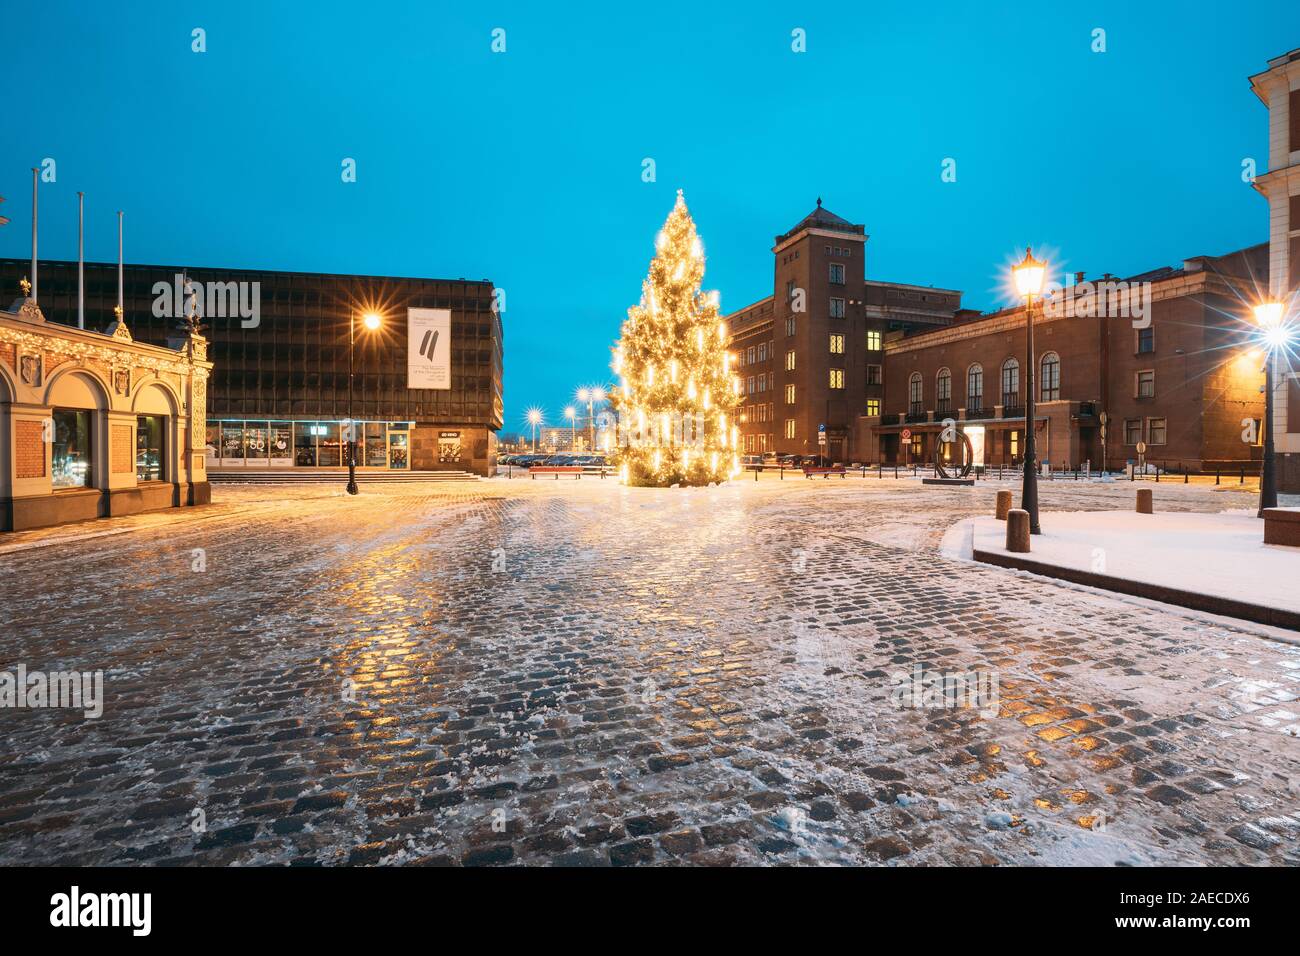 Riga, Lettland - 14. Dezember 2016: Winter Nachtansicht des Museums für die Besetzung von Lettland, Weihnachten Weihnachtsbaum und technische Universität Riga RTU bei Ev Stockfoto